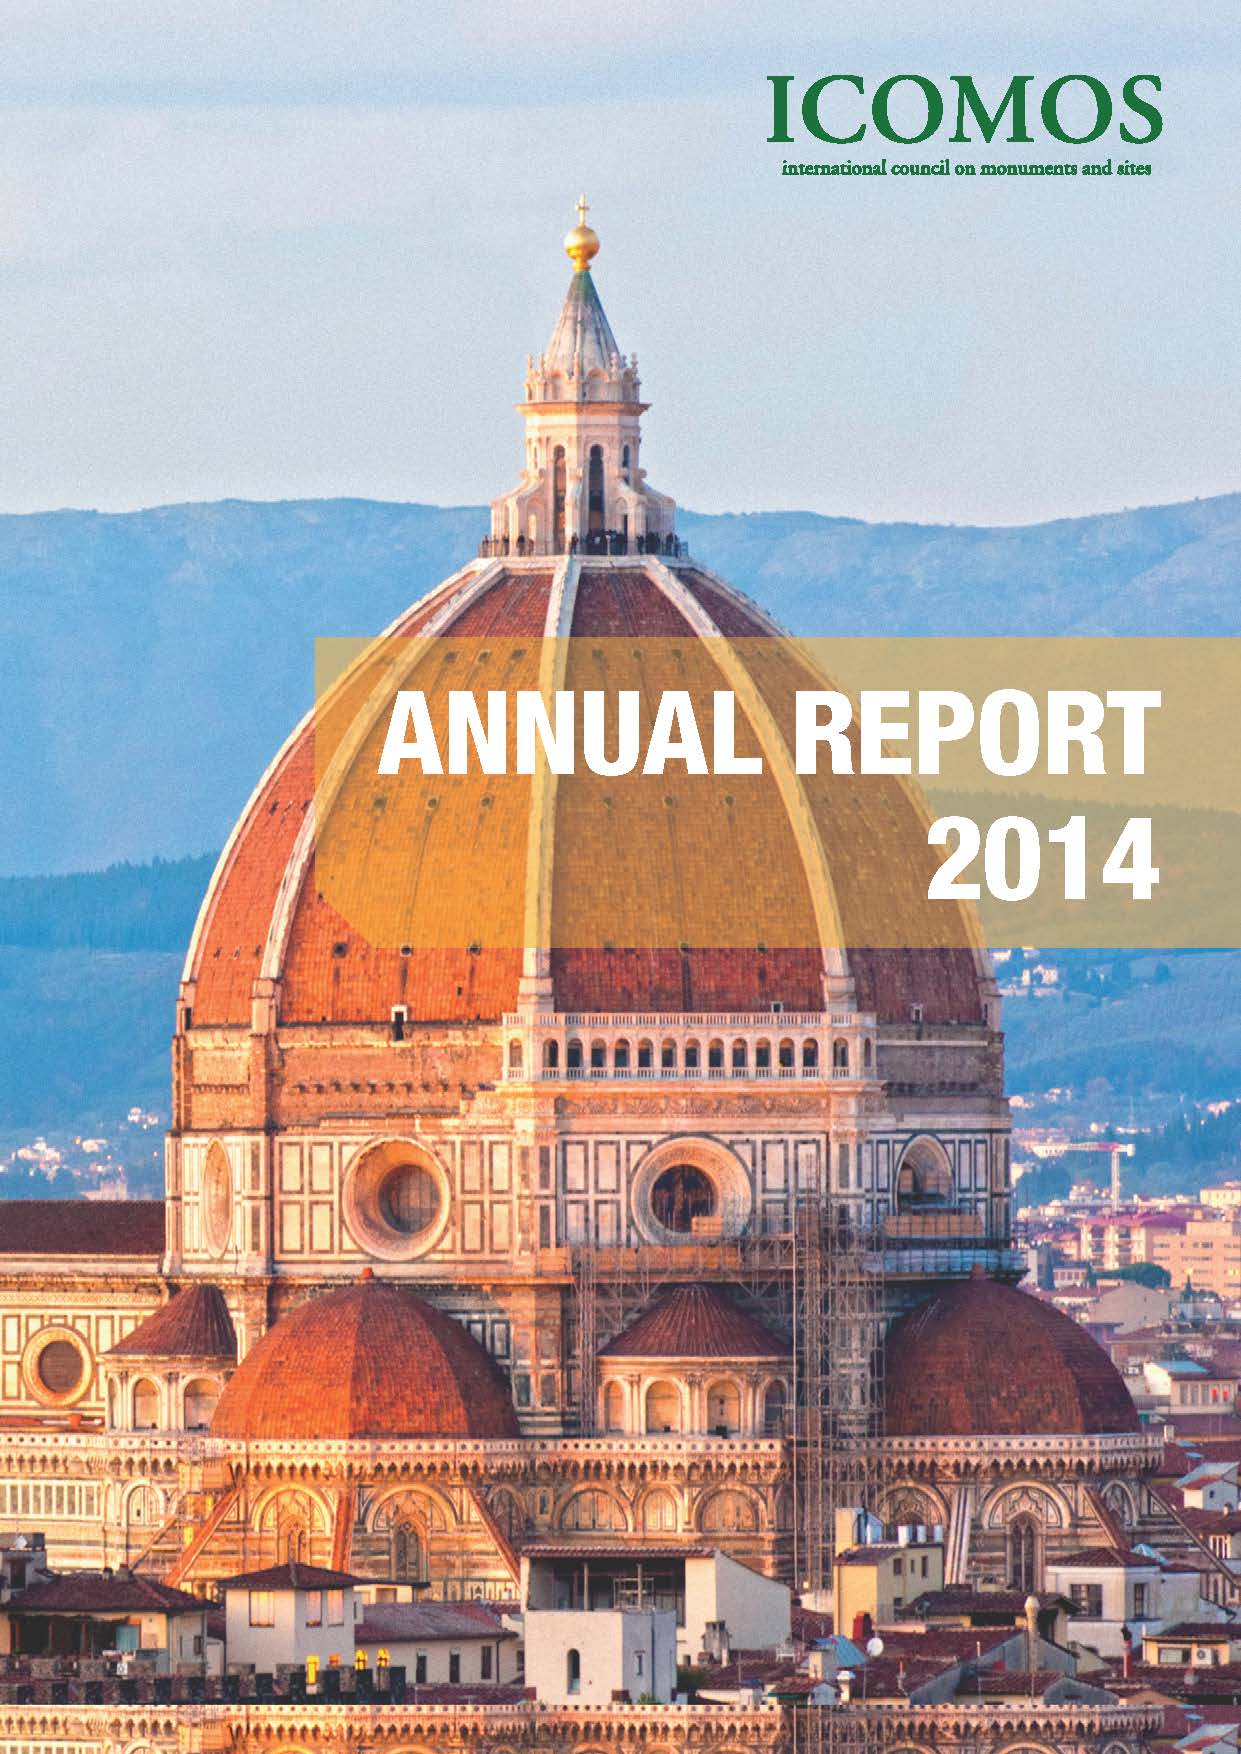 ICOMOS Annual Report 2014, copyright : ICOMOS 